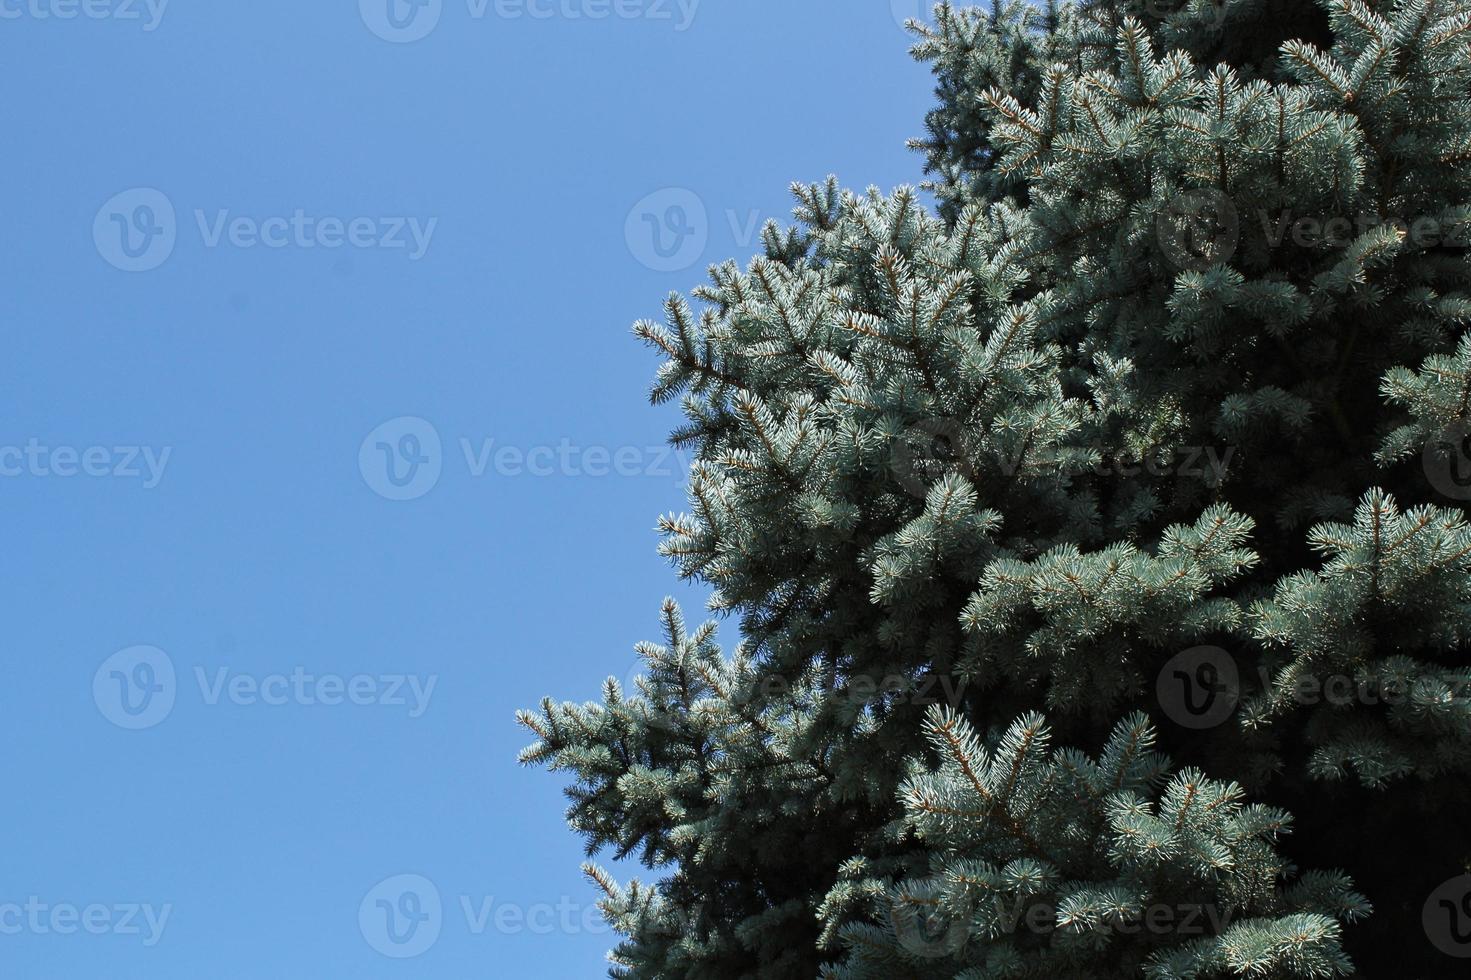 vers blauw net takken Aan blauw lucht achtergrond. samenstelling picea pungens landschapsarchitectuur in Japans tuin. natuur botanisch groenblijvend pijnboom naald- planten concept. Kerstmis boom. kopiëren ruimte foto